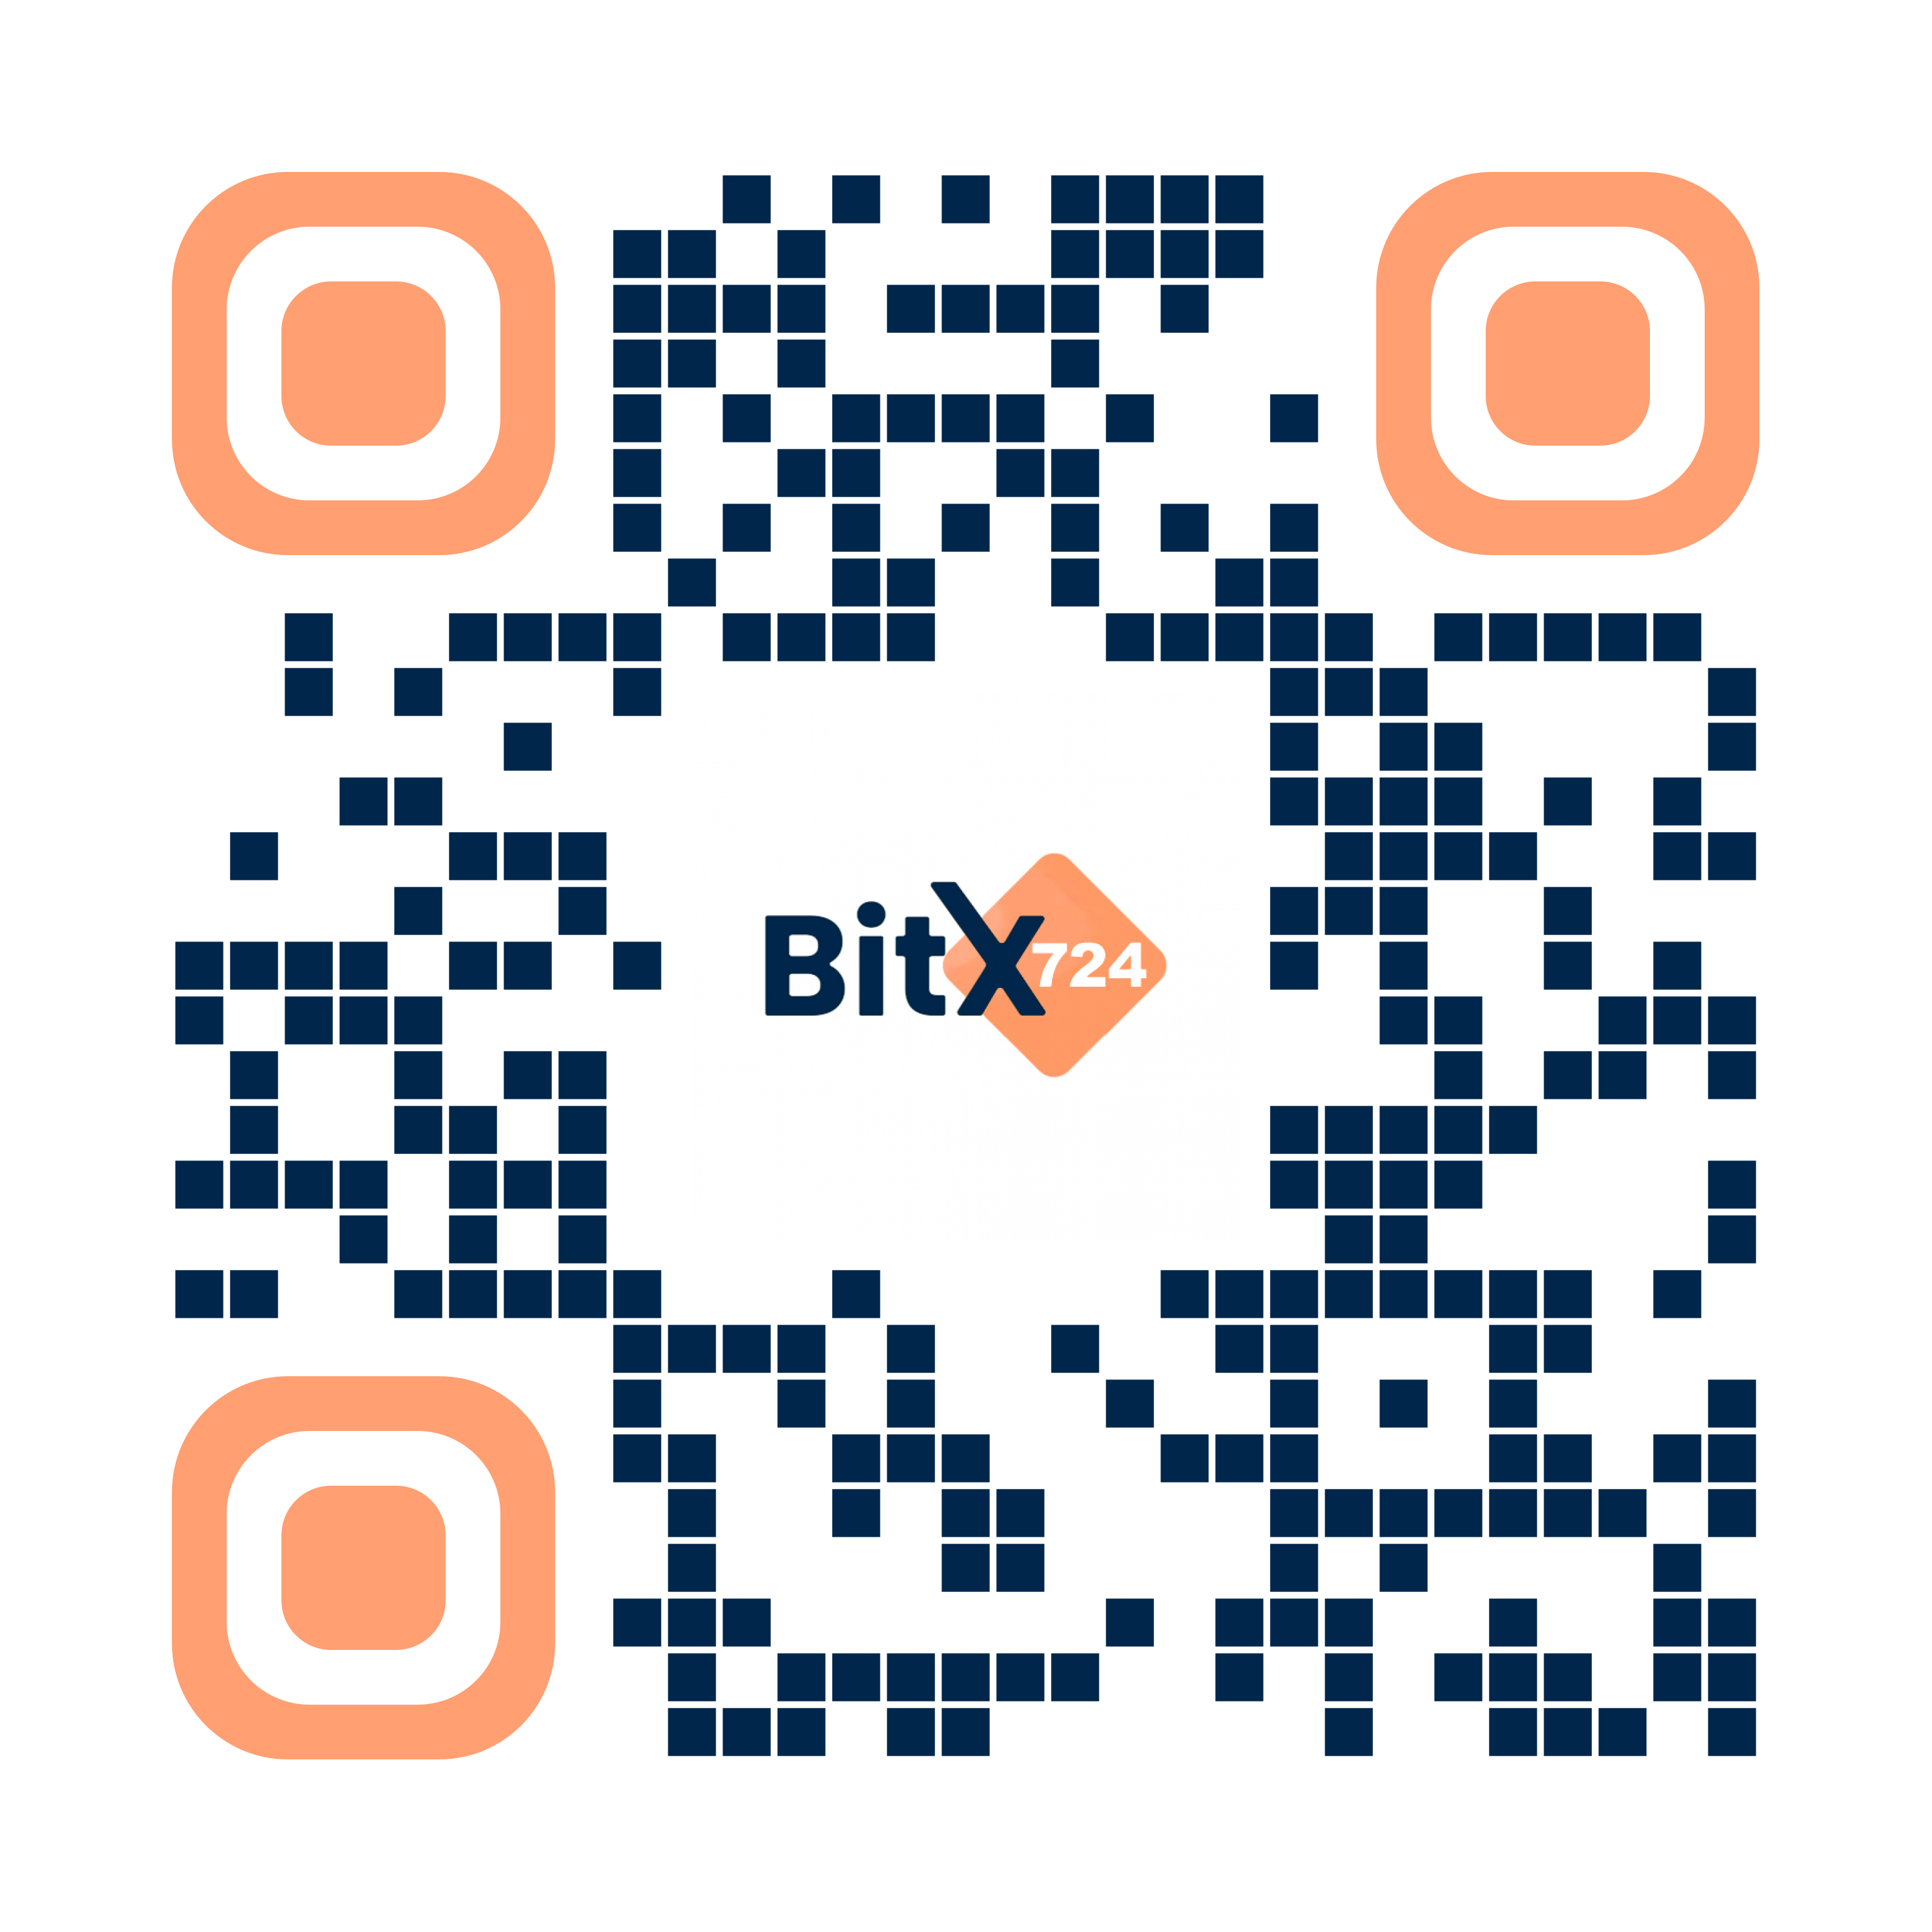 Barcode Download App Bitx724